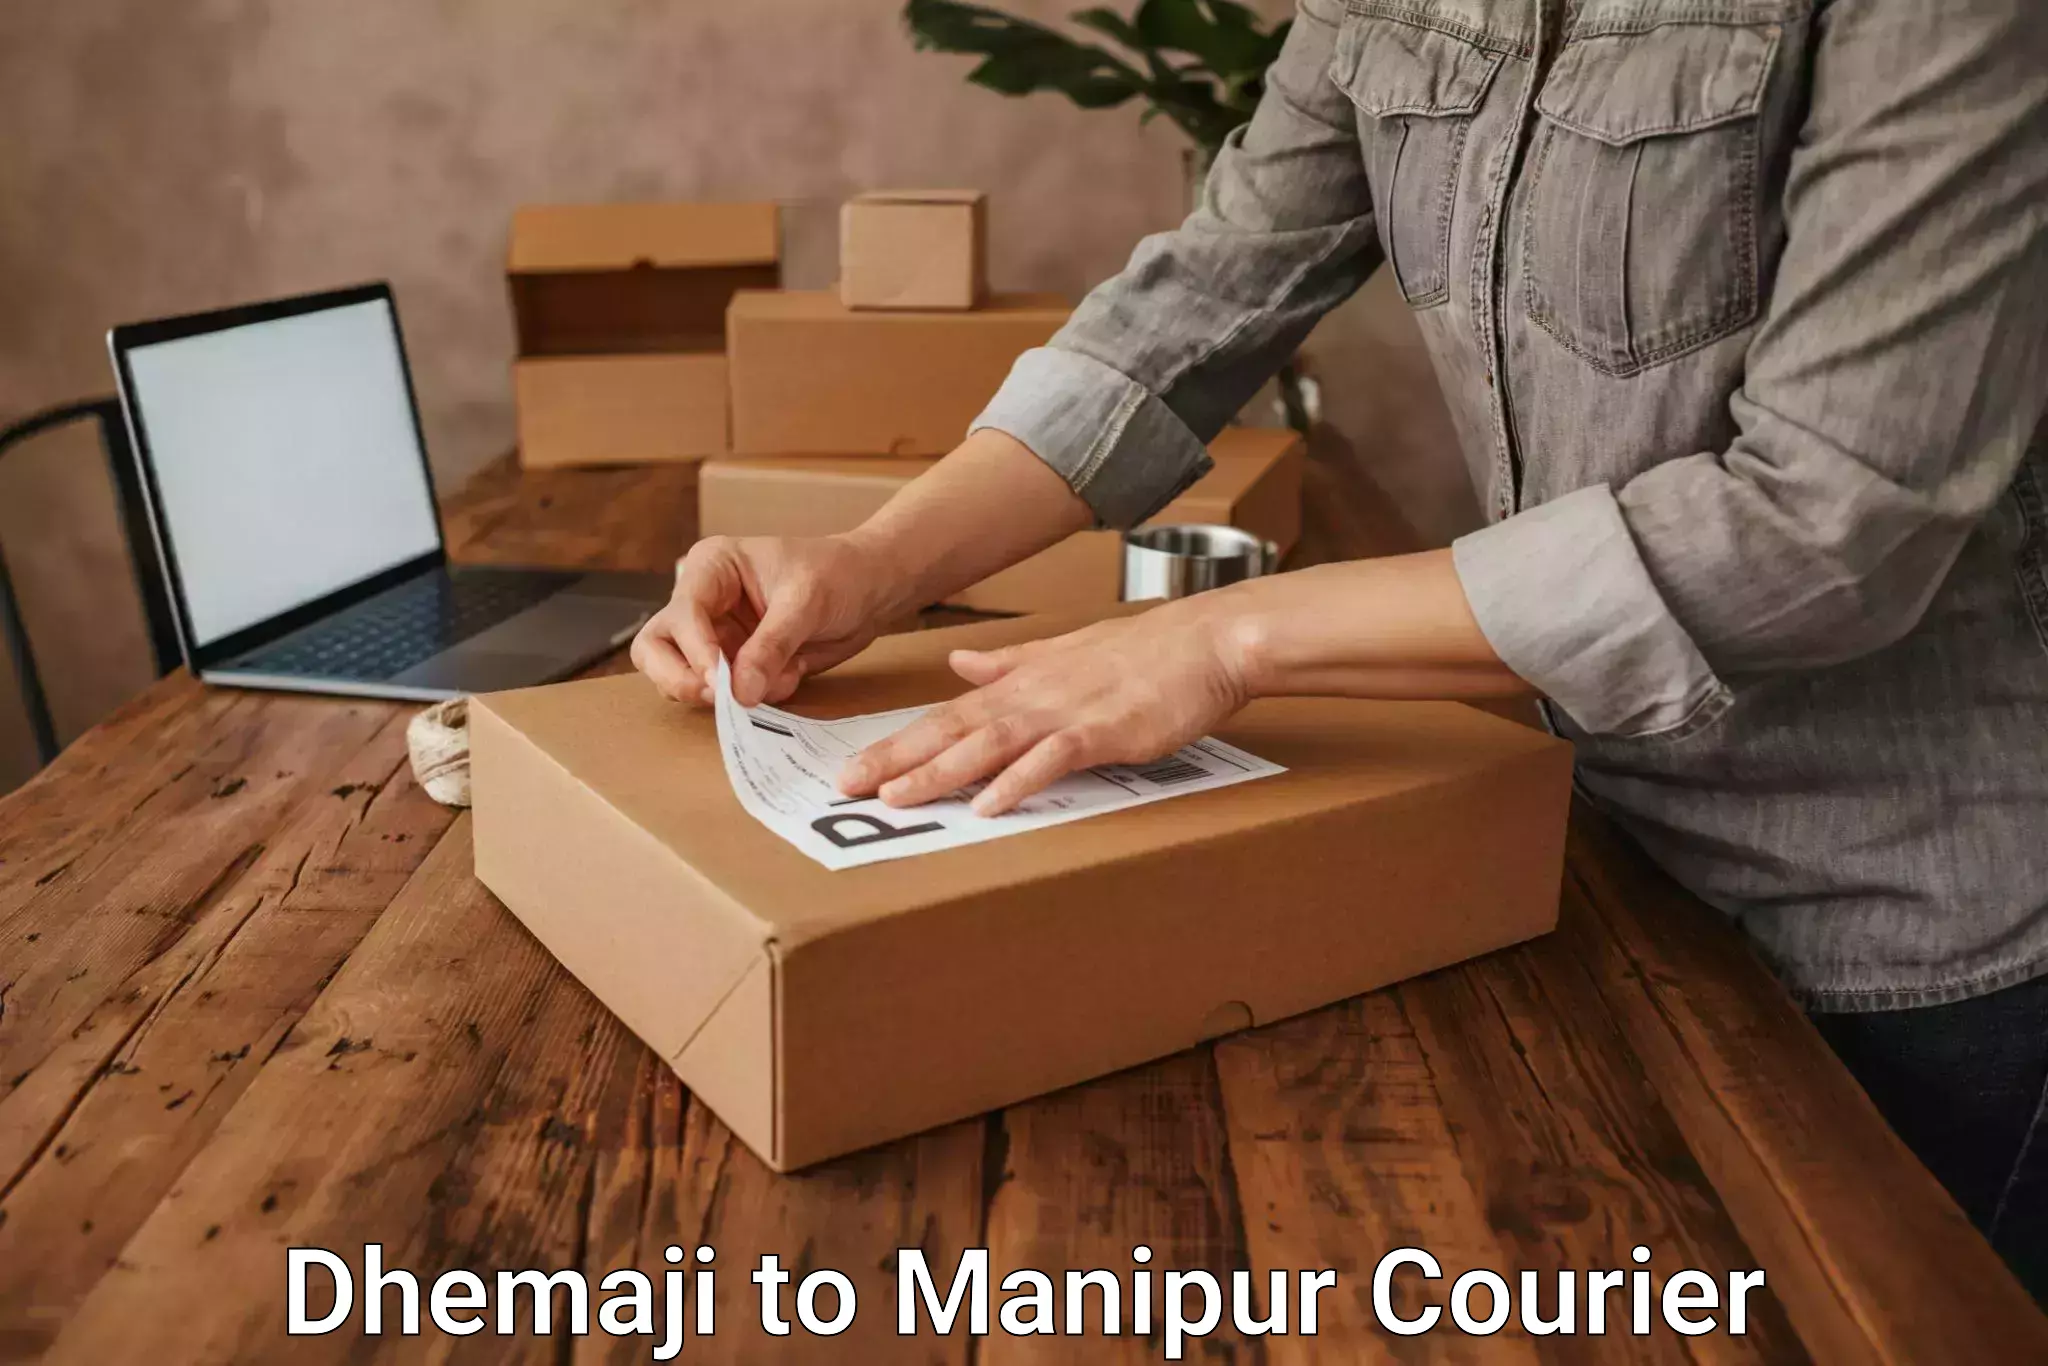 User-friendly delivery service Dhemaji to Senapati